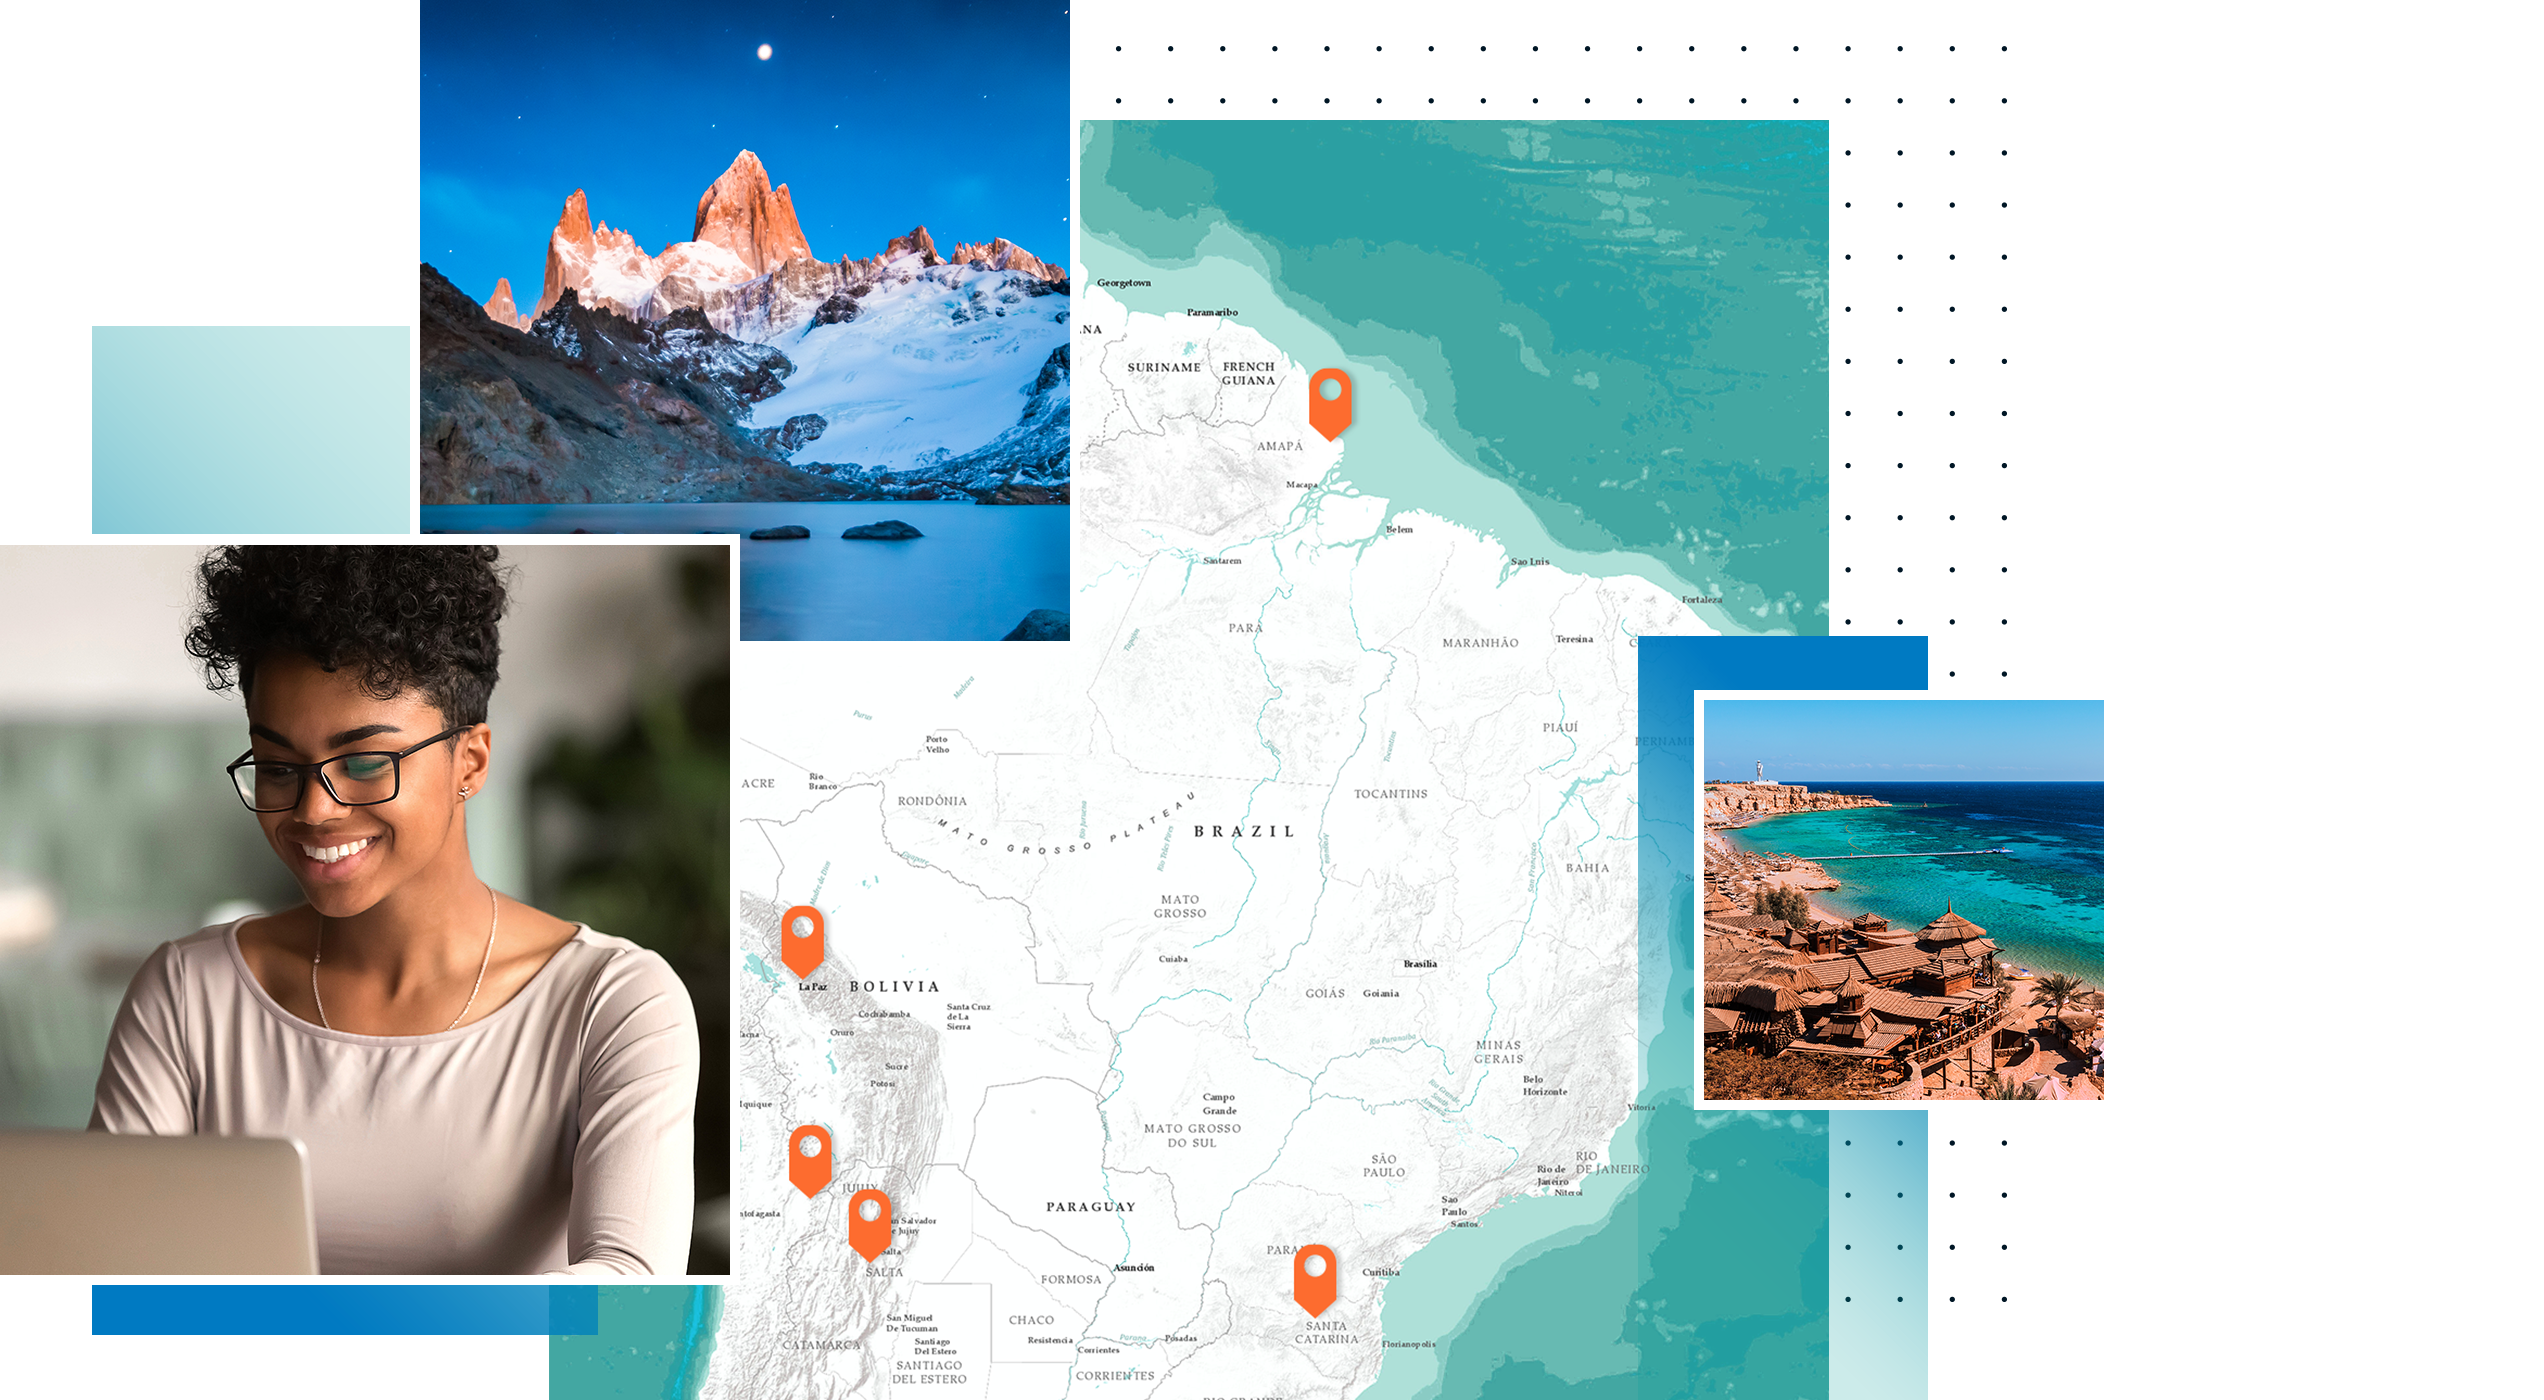 مجموعة من الصور تتضمن امرأة تكتب على جهاز كمبيوتر محمول، وخريطة لأمريكا الجنوبية مع خمس علامات مكان برتقالية وجبال